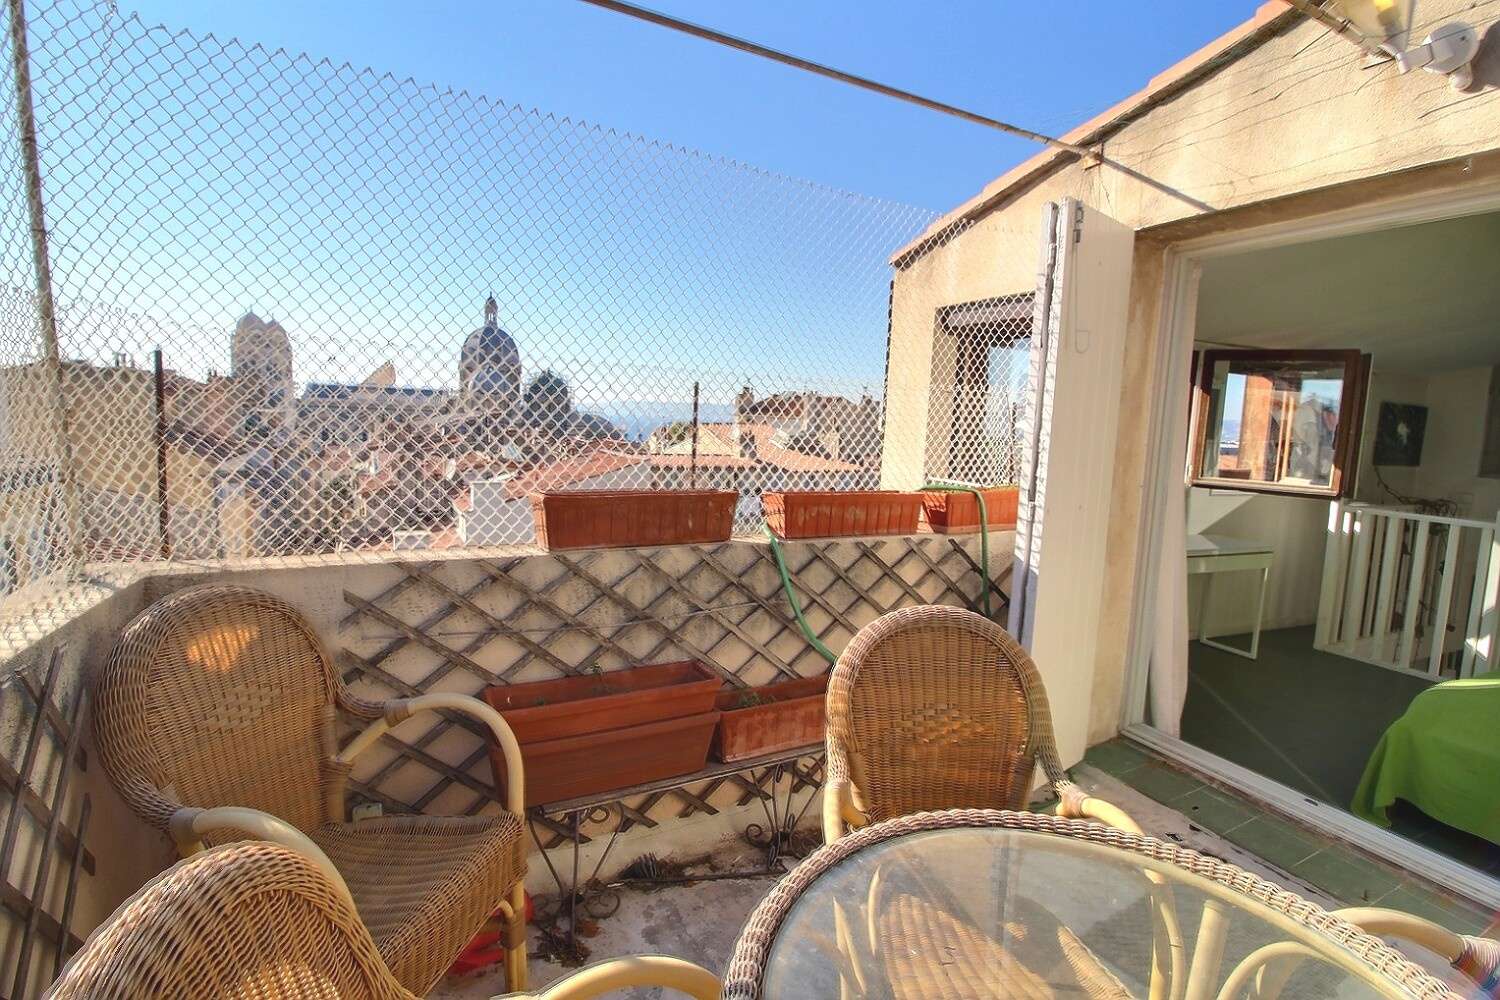  à vendre villa Marseille Bouches-du-Rhône 4